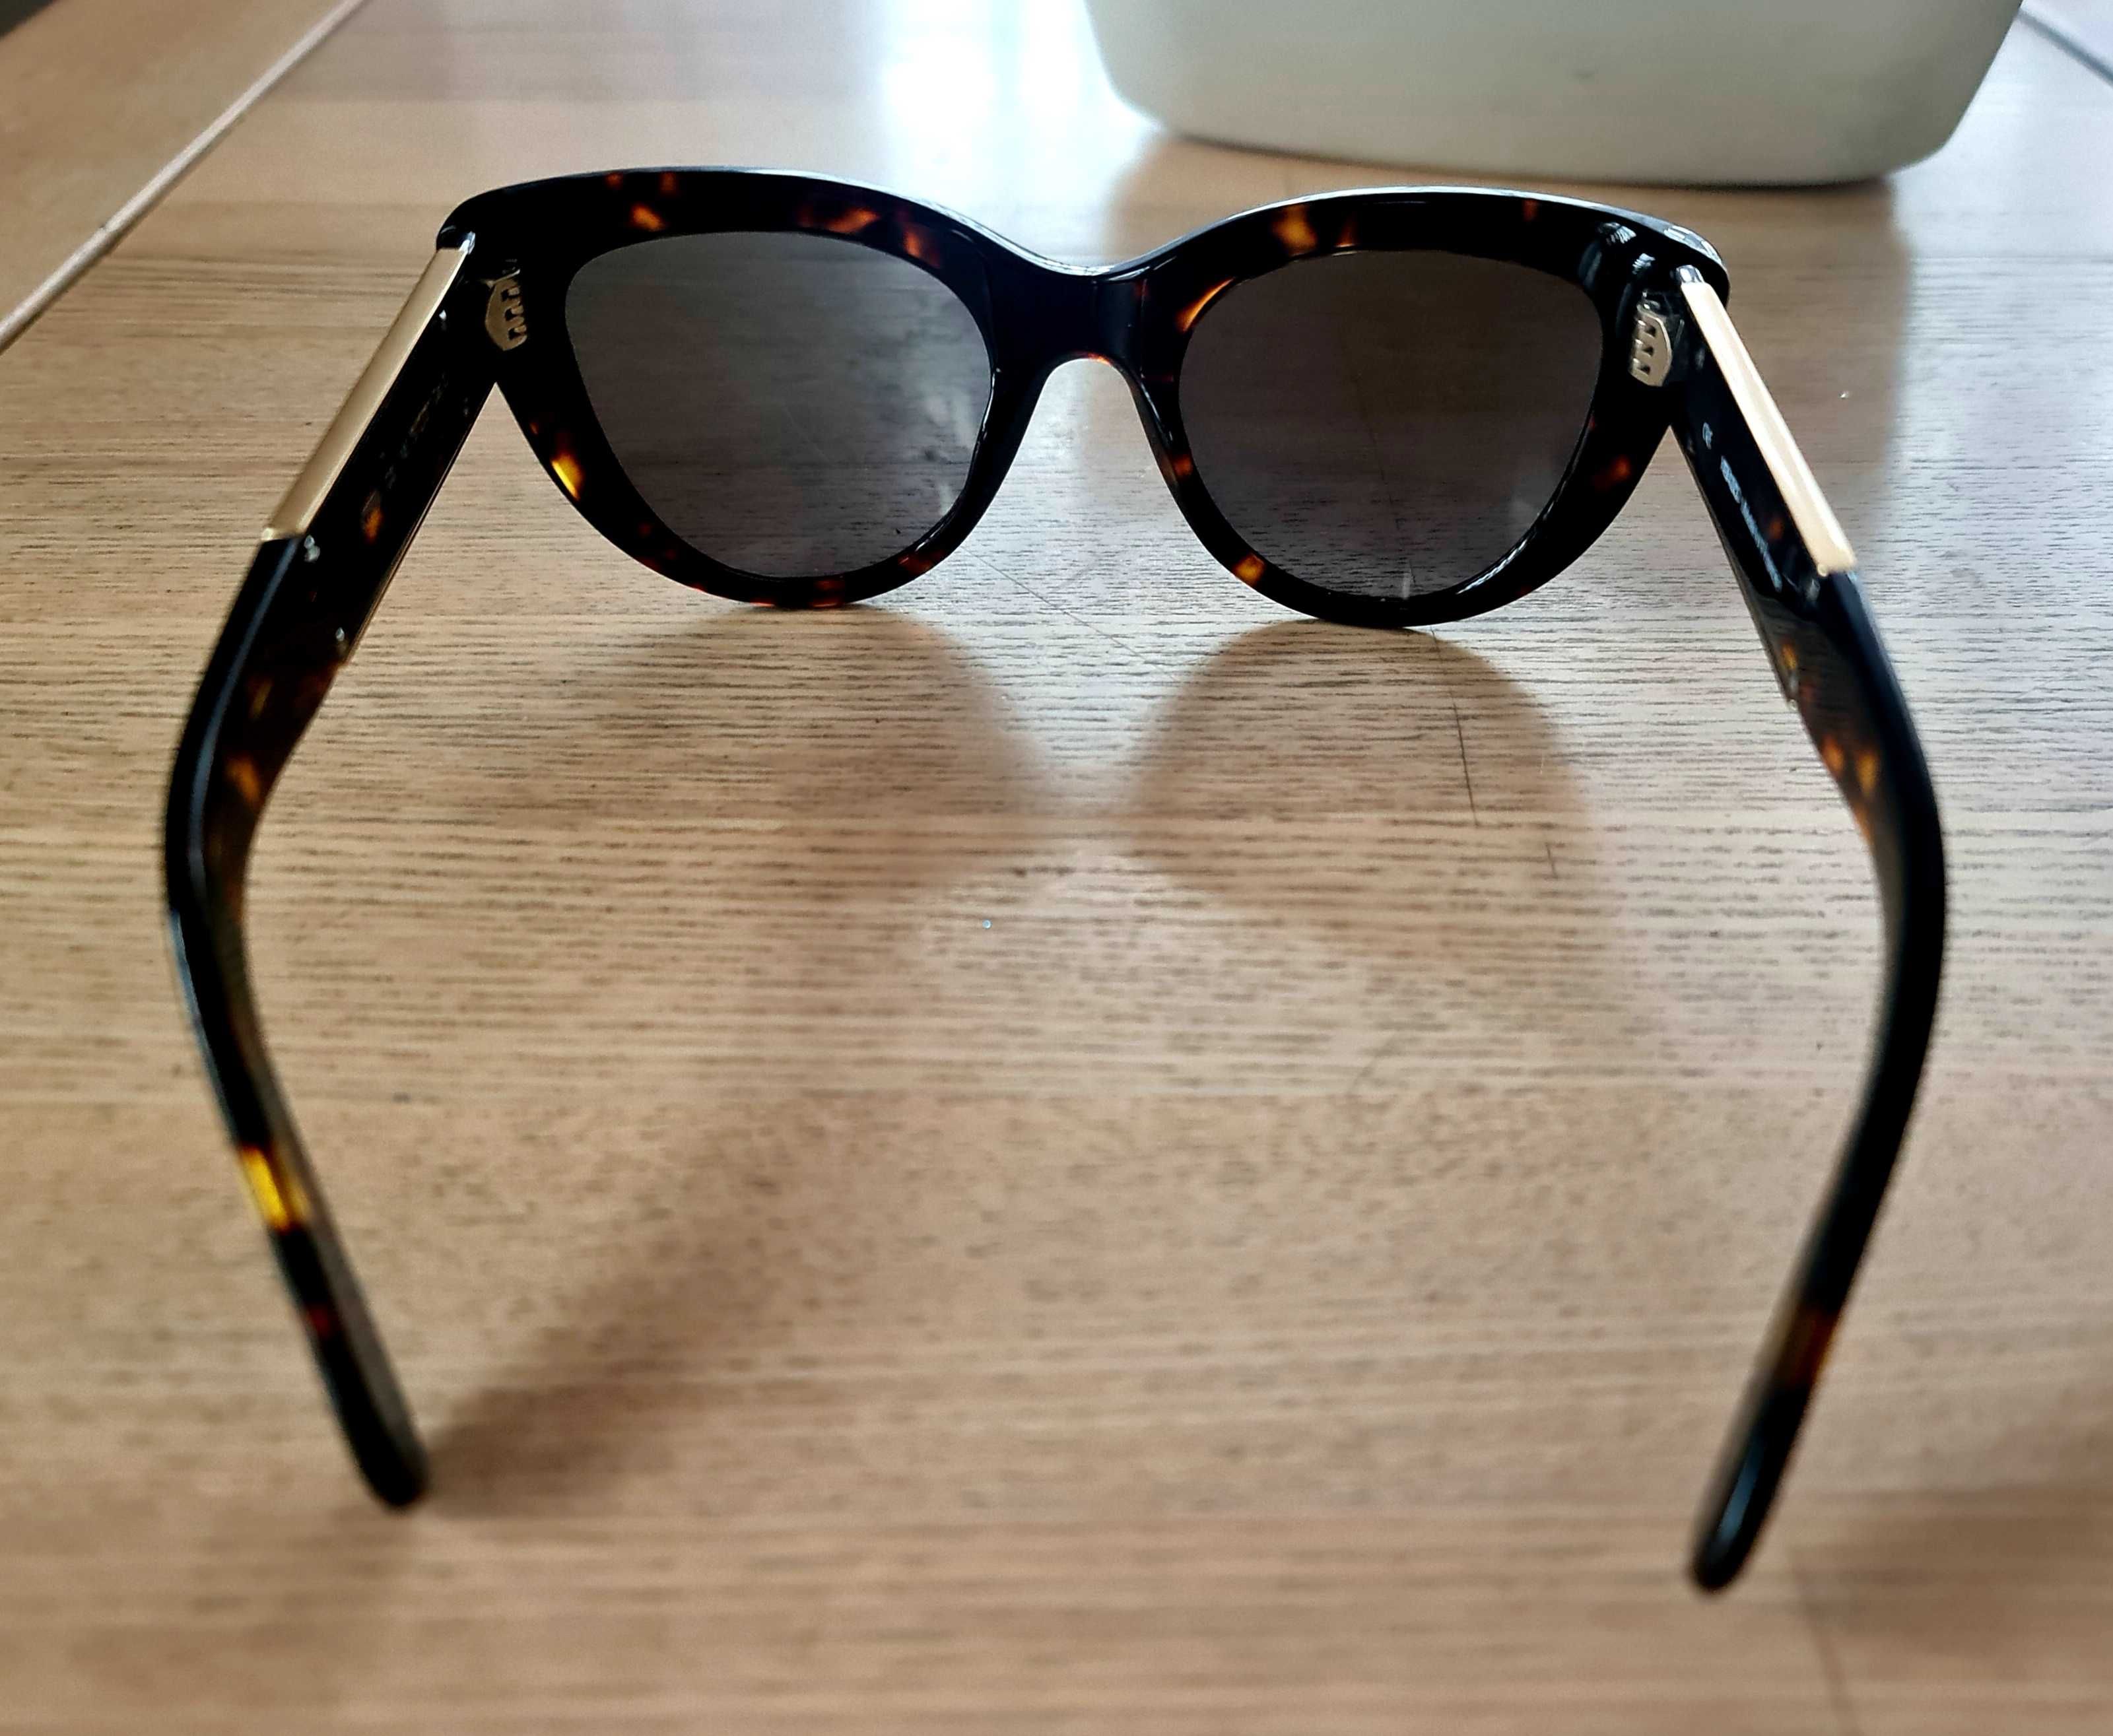 Okulary przeciwsloneczne damskie  KENZO, jak nowe